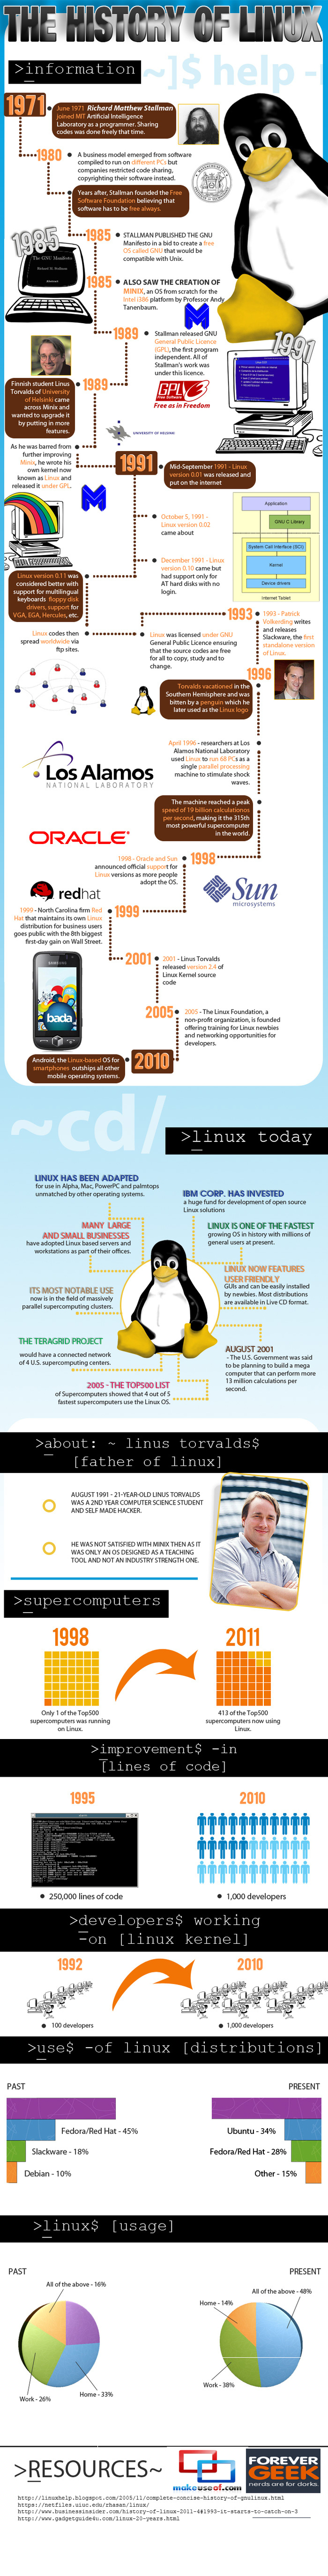 L'histoire de Linux en 1 image